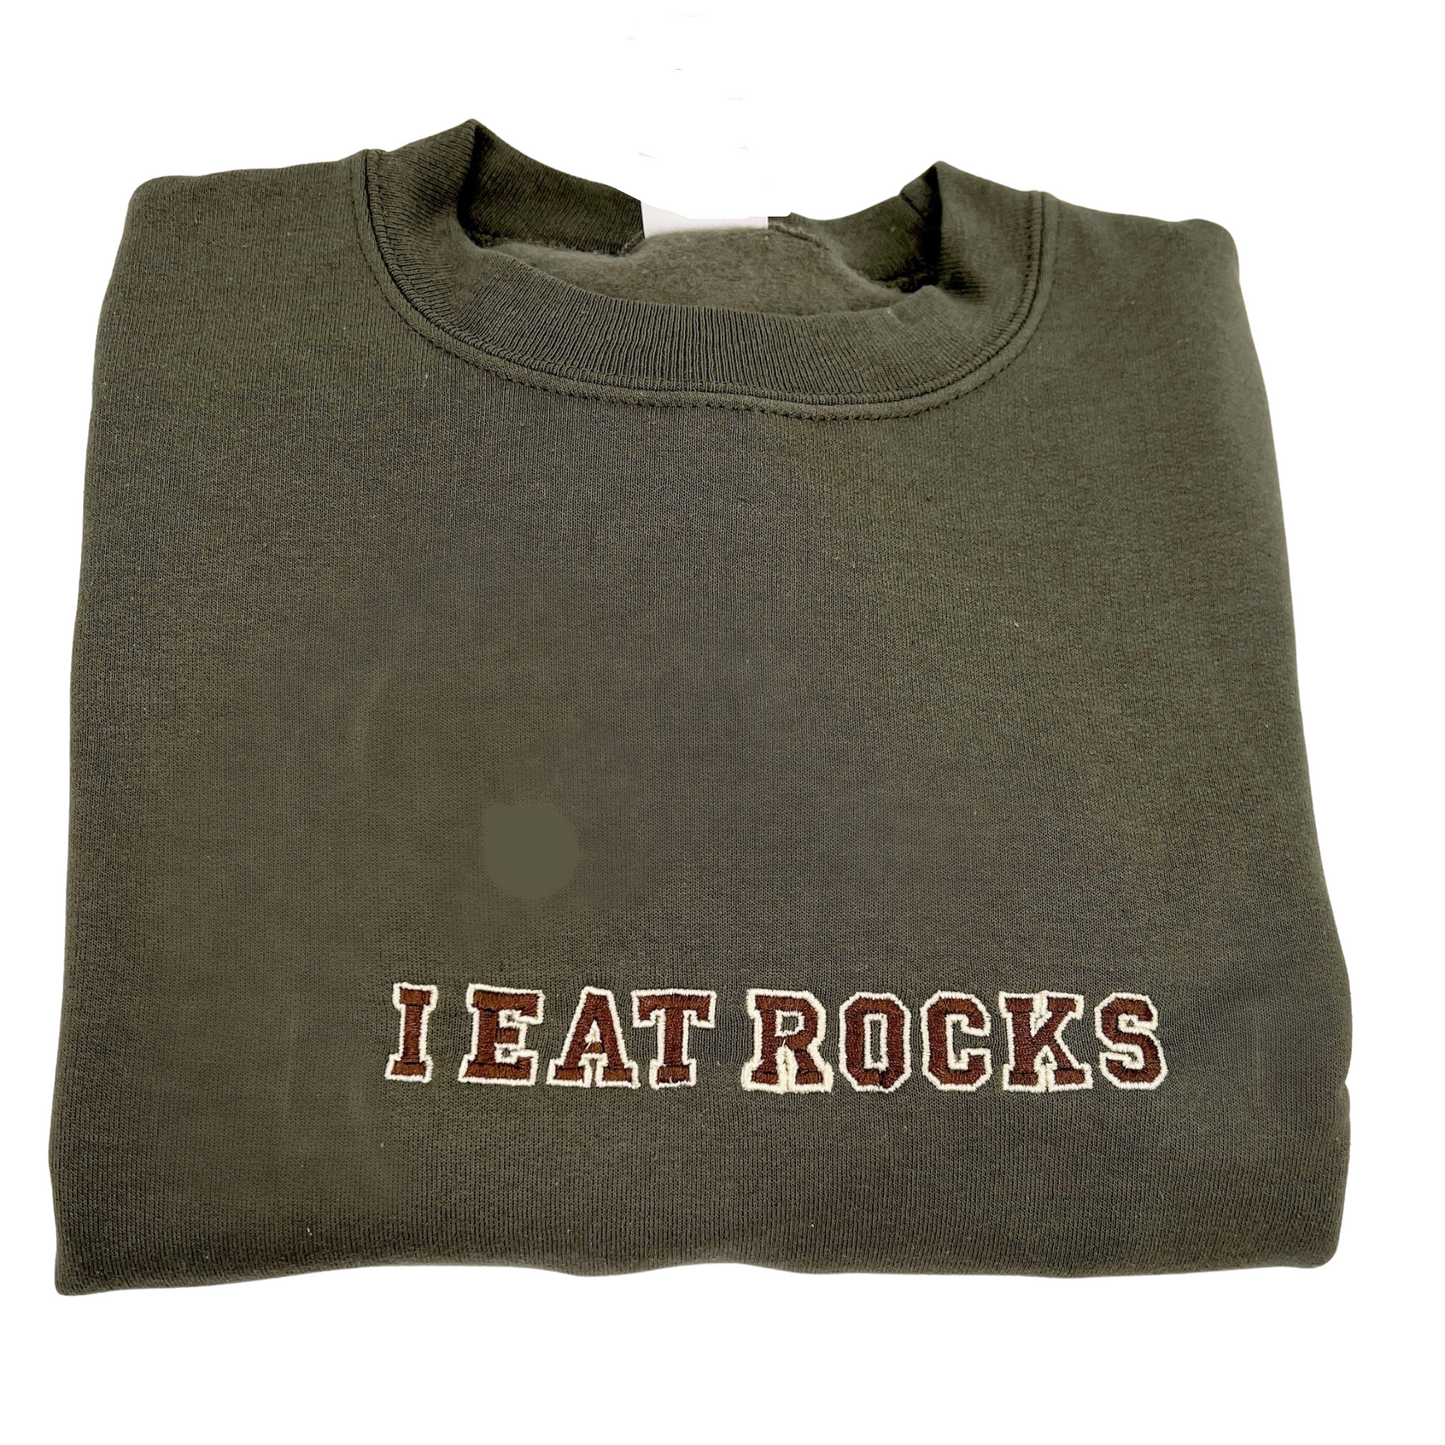 I Eat Rocks Embroidered Unisex Shirt